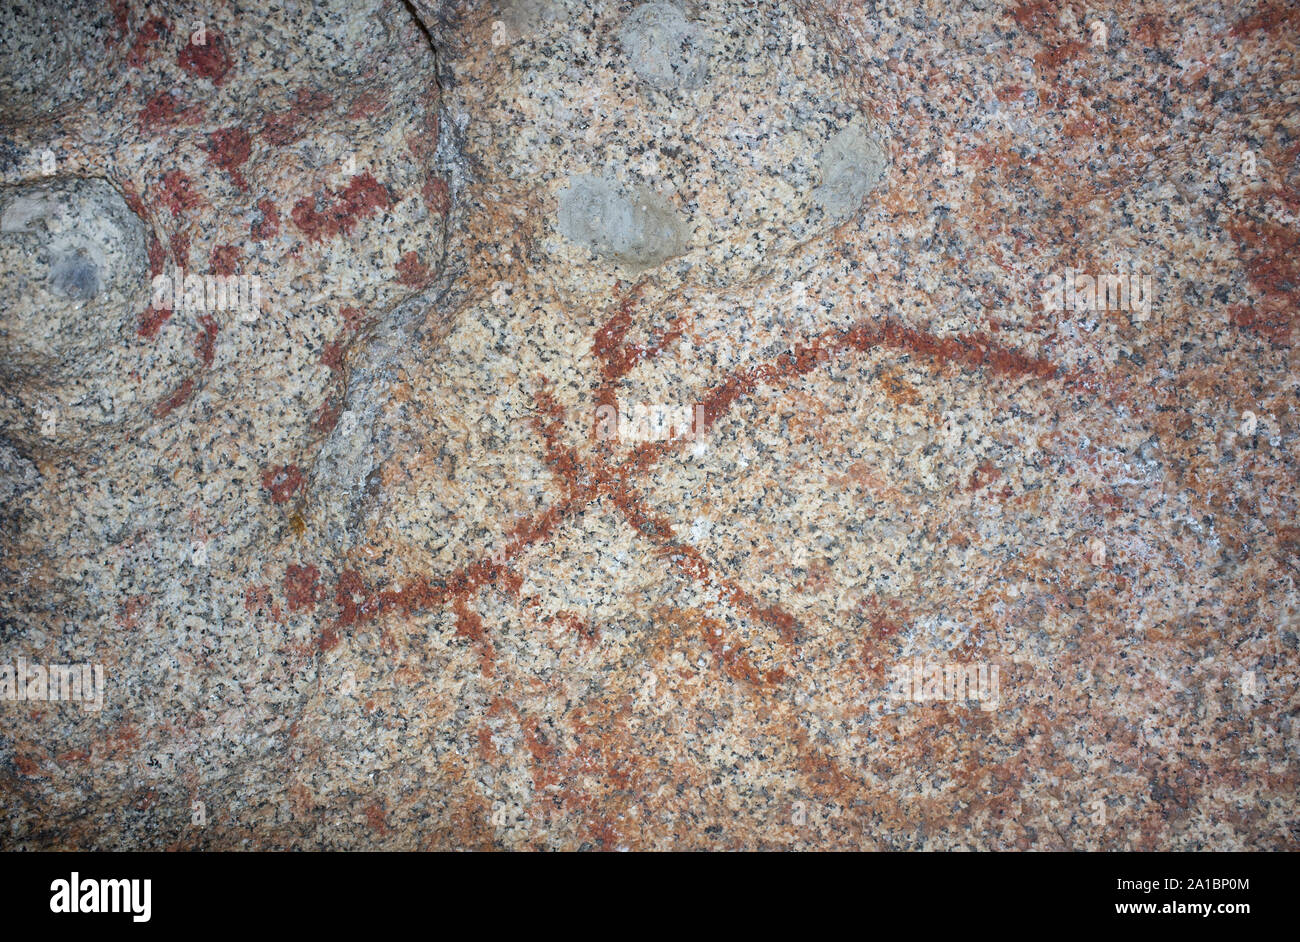 Prähistorische schematische Gemälde im Inneren granitblock am Naturdenkmal Los Barruecos, Extremadura, Spanien. Ast-förmige Gemälde der Darstellung ein ho Stockfoto